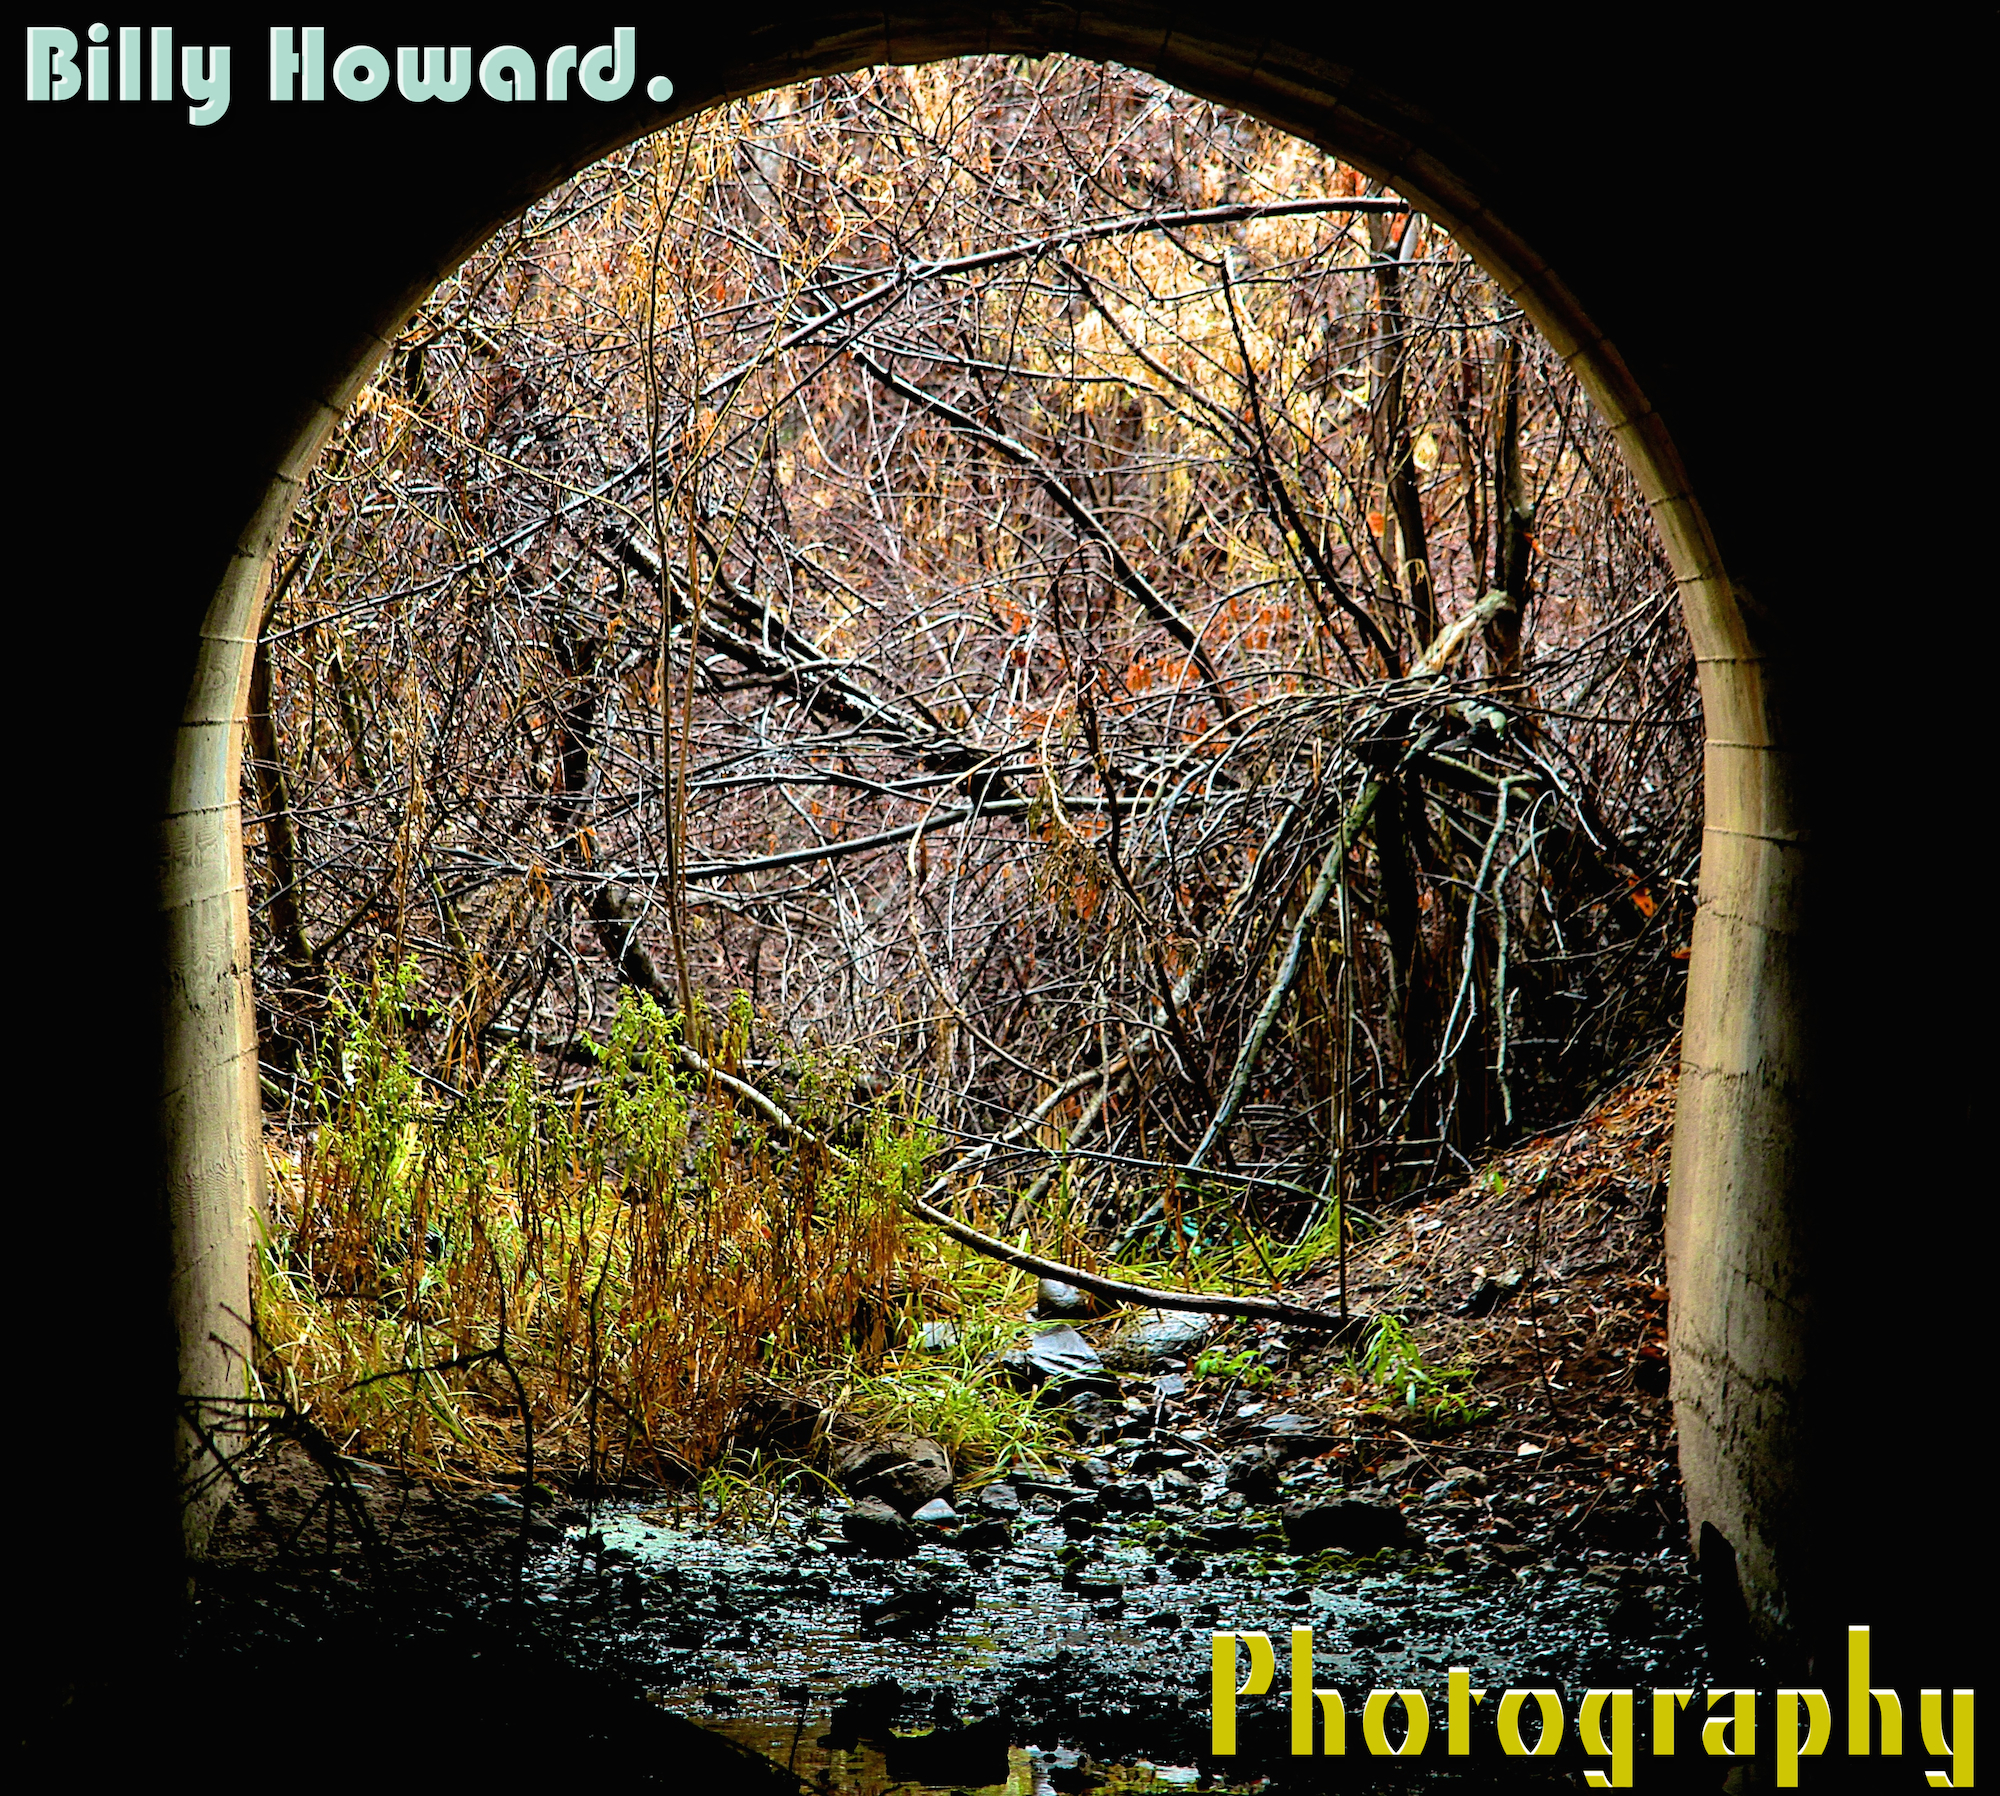 Billy Howard Photography